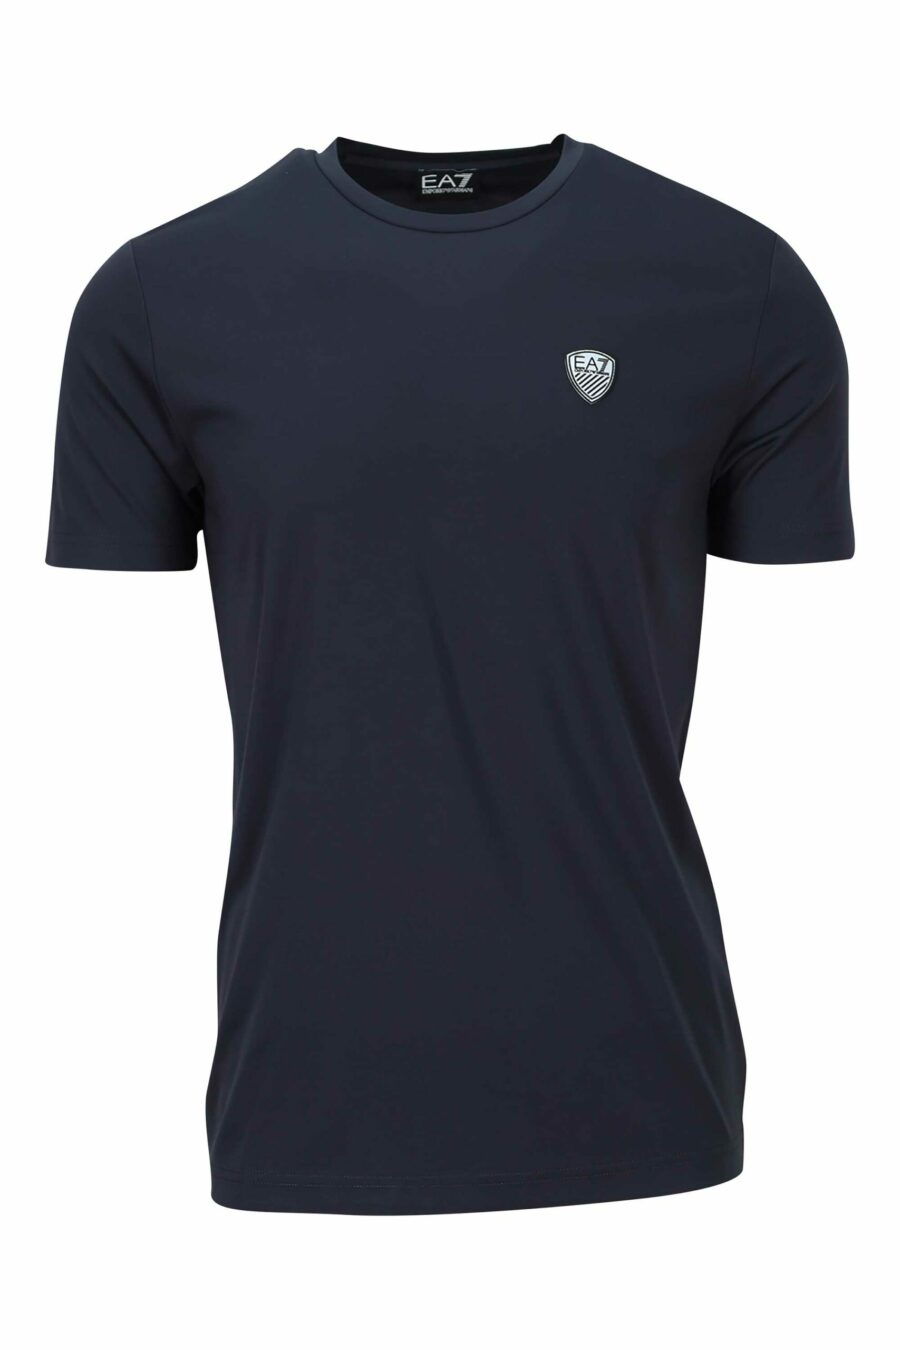 Marineblaues T-Shirt mit Mini-Logo-Schild "lux identity" - 8057767519964 skaliert